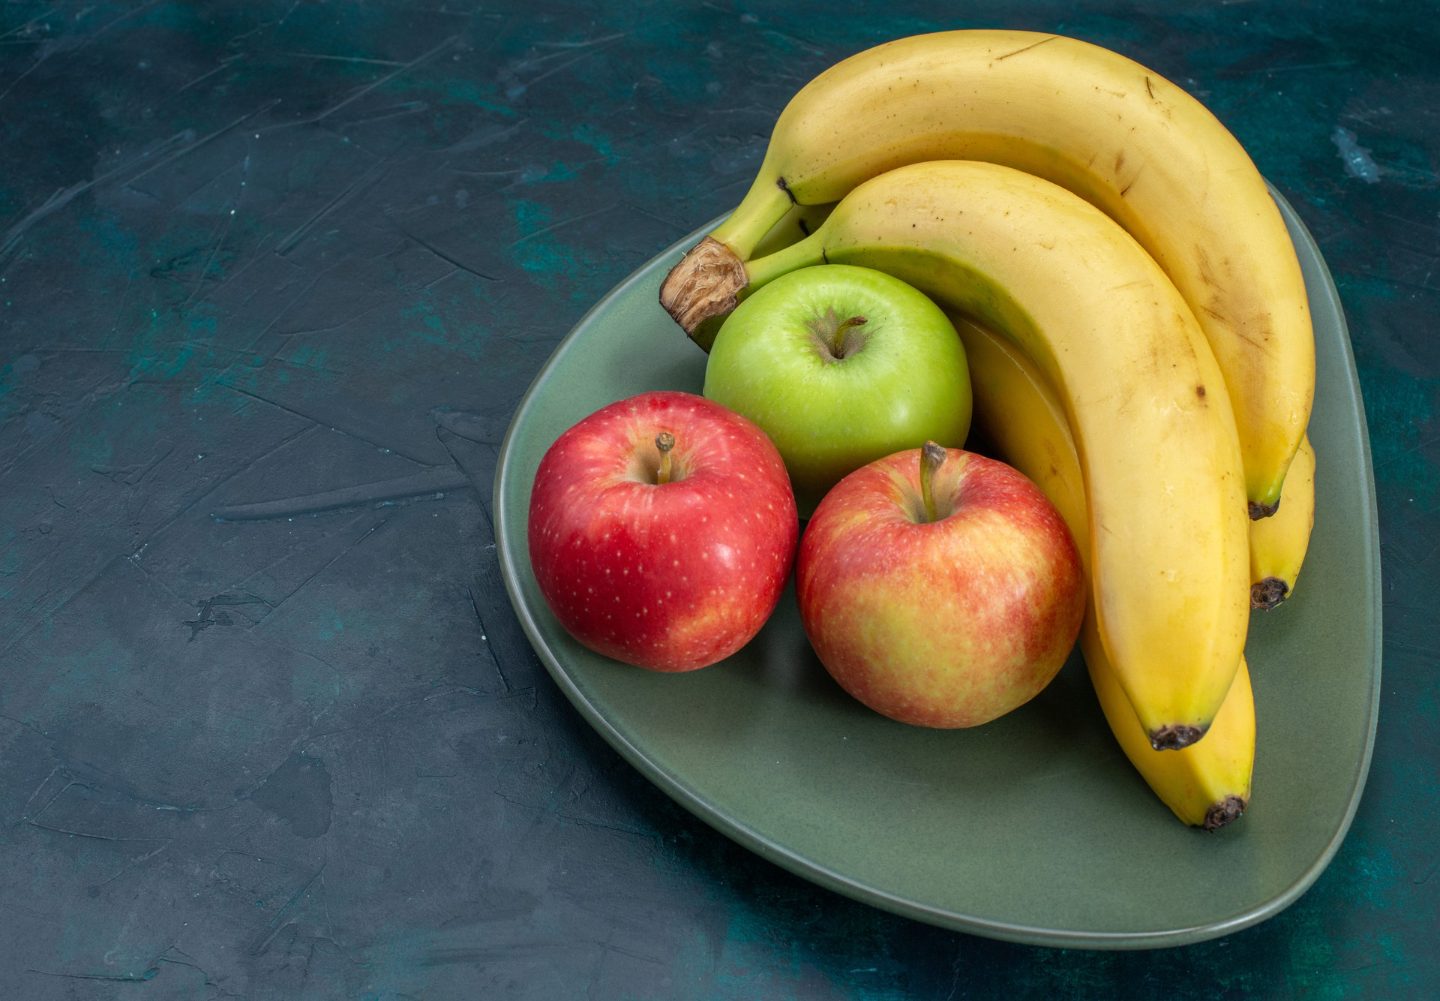 Banan eller äpple innan träning?  Vad är Bäst?